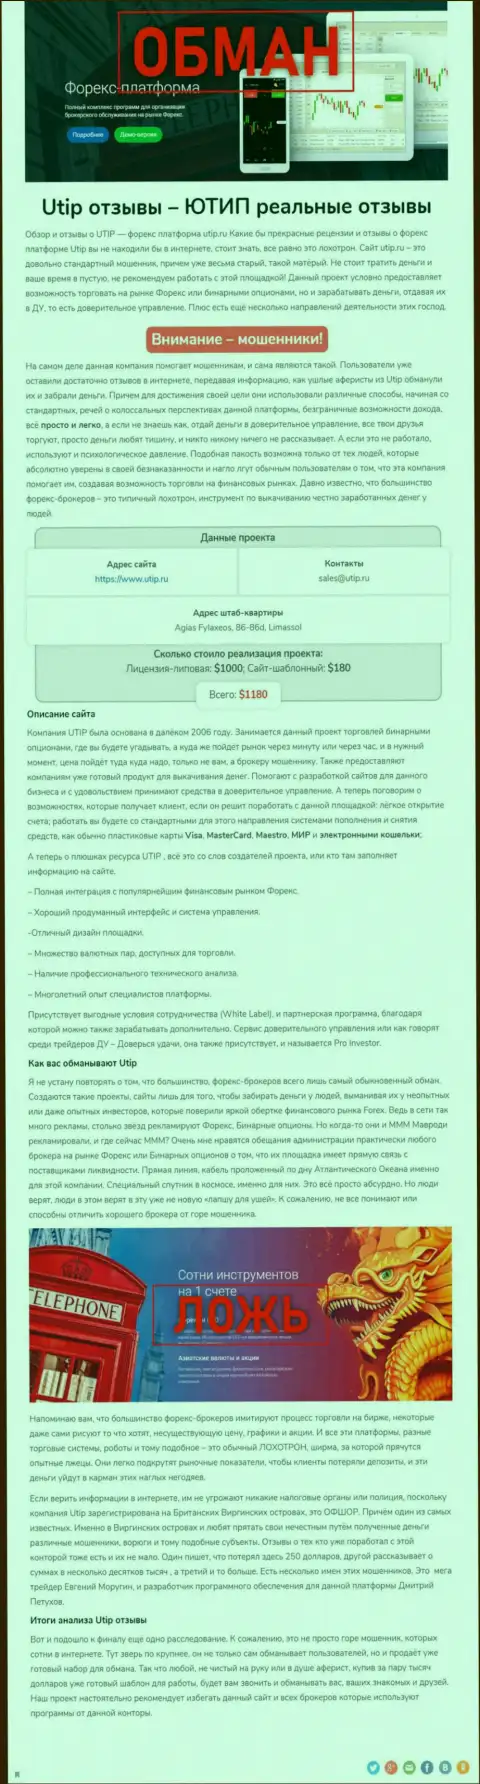 UTIP Ru - это ВОРЮГА !!! Схемы надувательства (обзор мошеннических действий)